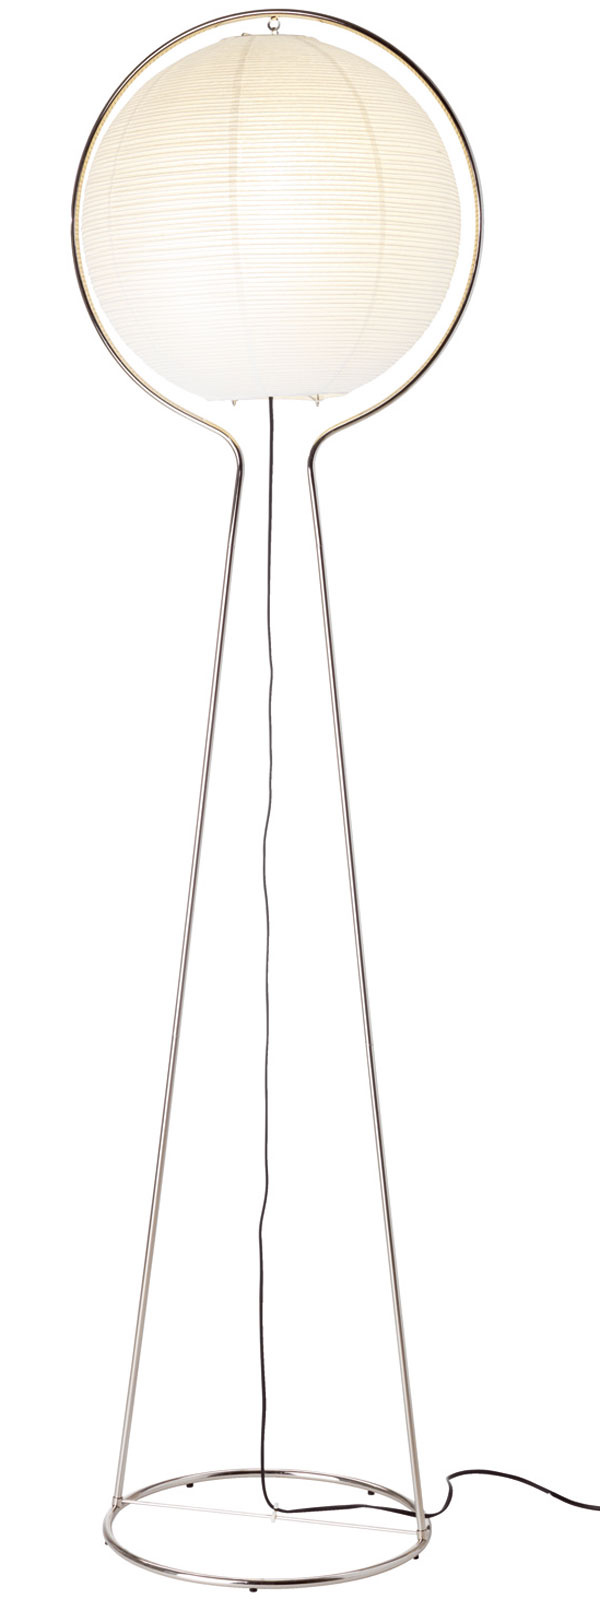 Stojacia lampa VÄTE poskytuje príjemné rozptýlené svetlo. Tienidlo z ryžového papiera, rám z poniklovanej ocele. Rozmery: výška 163 cm, priemer tienidla 40 cm. Cena 34,99 €. Predáva IKEA.
